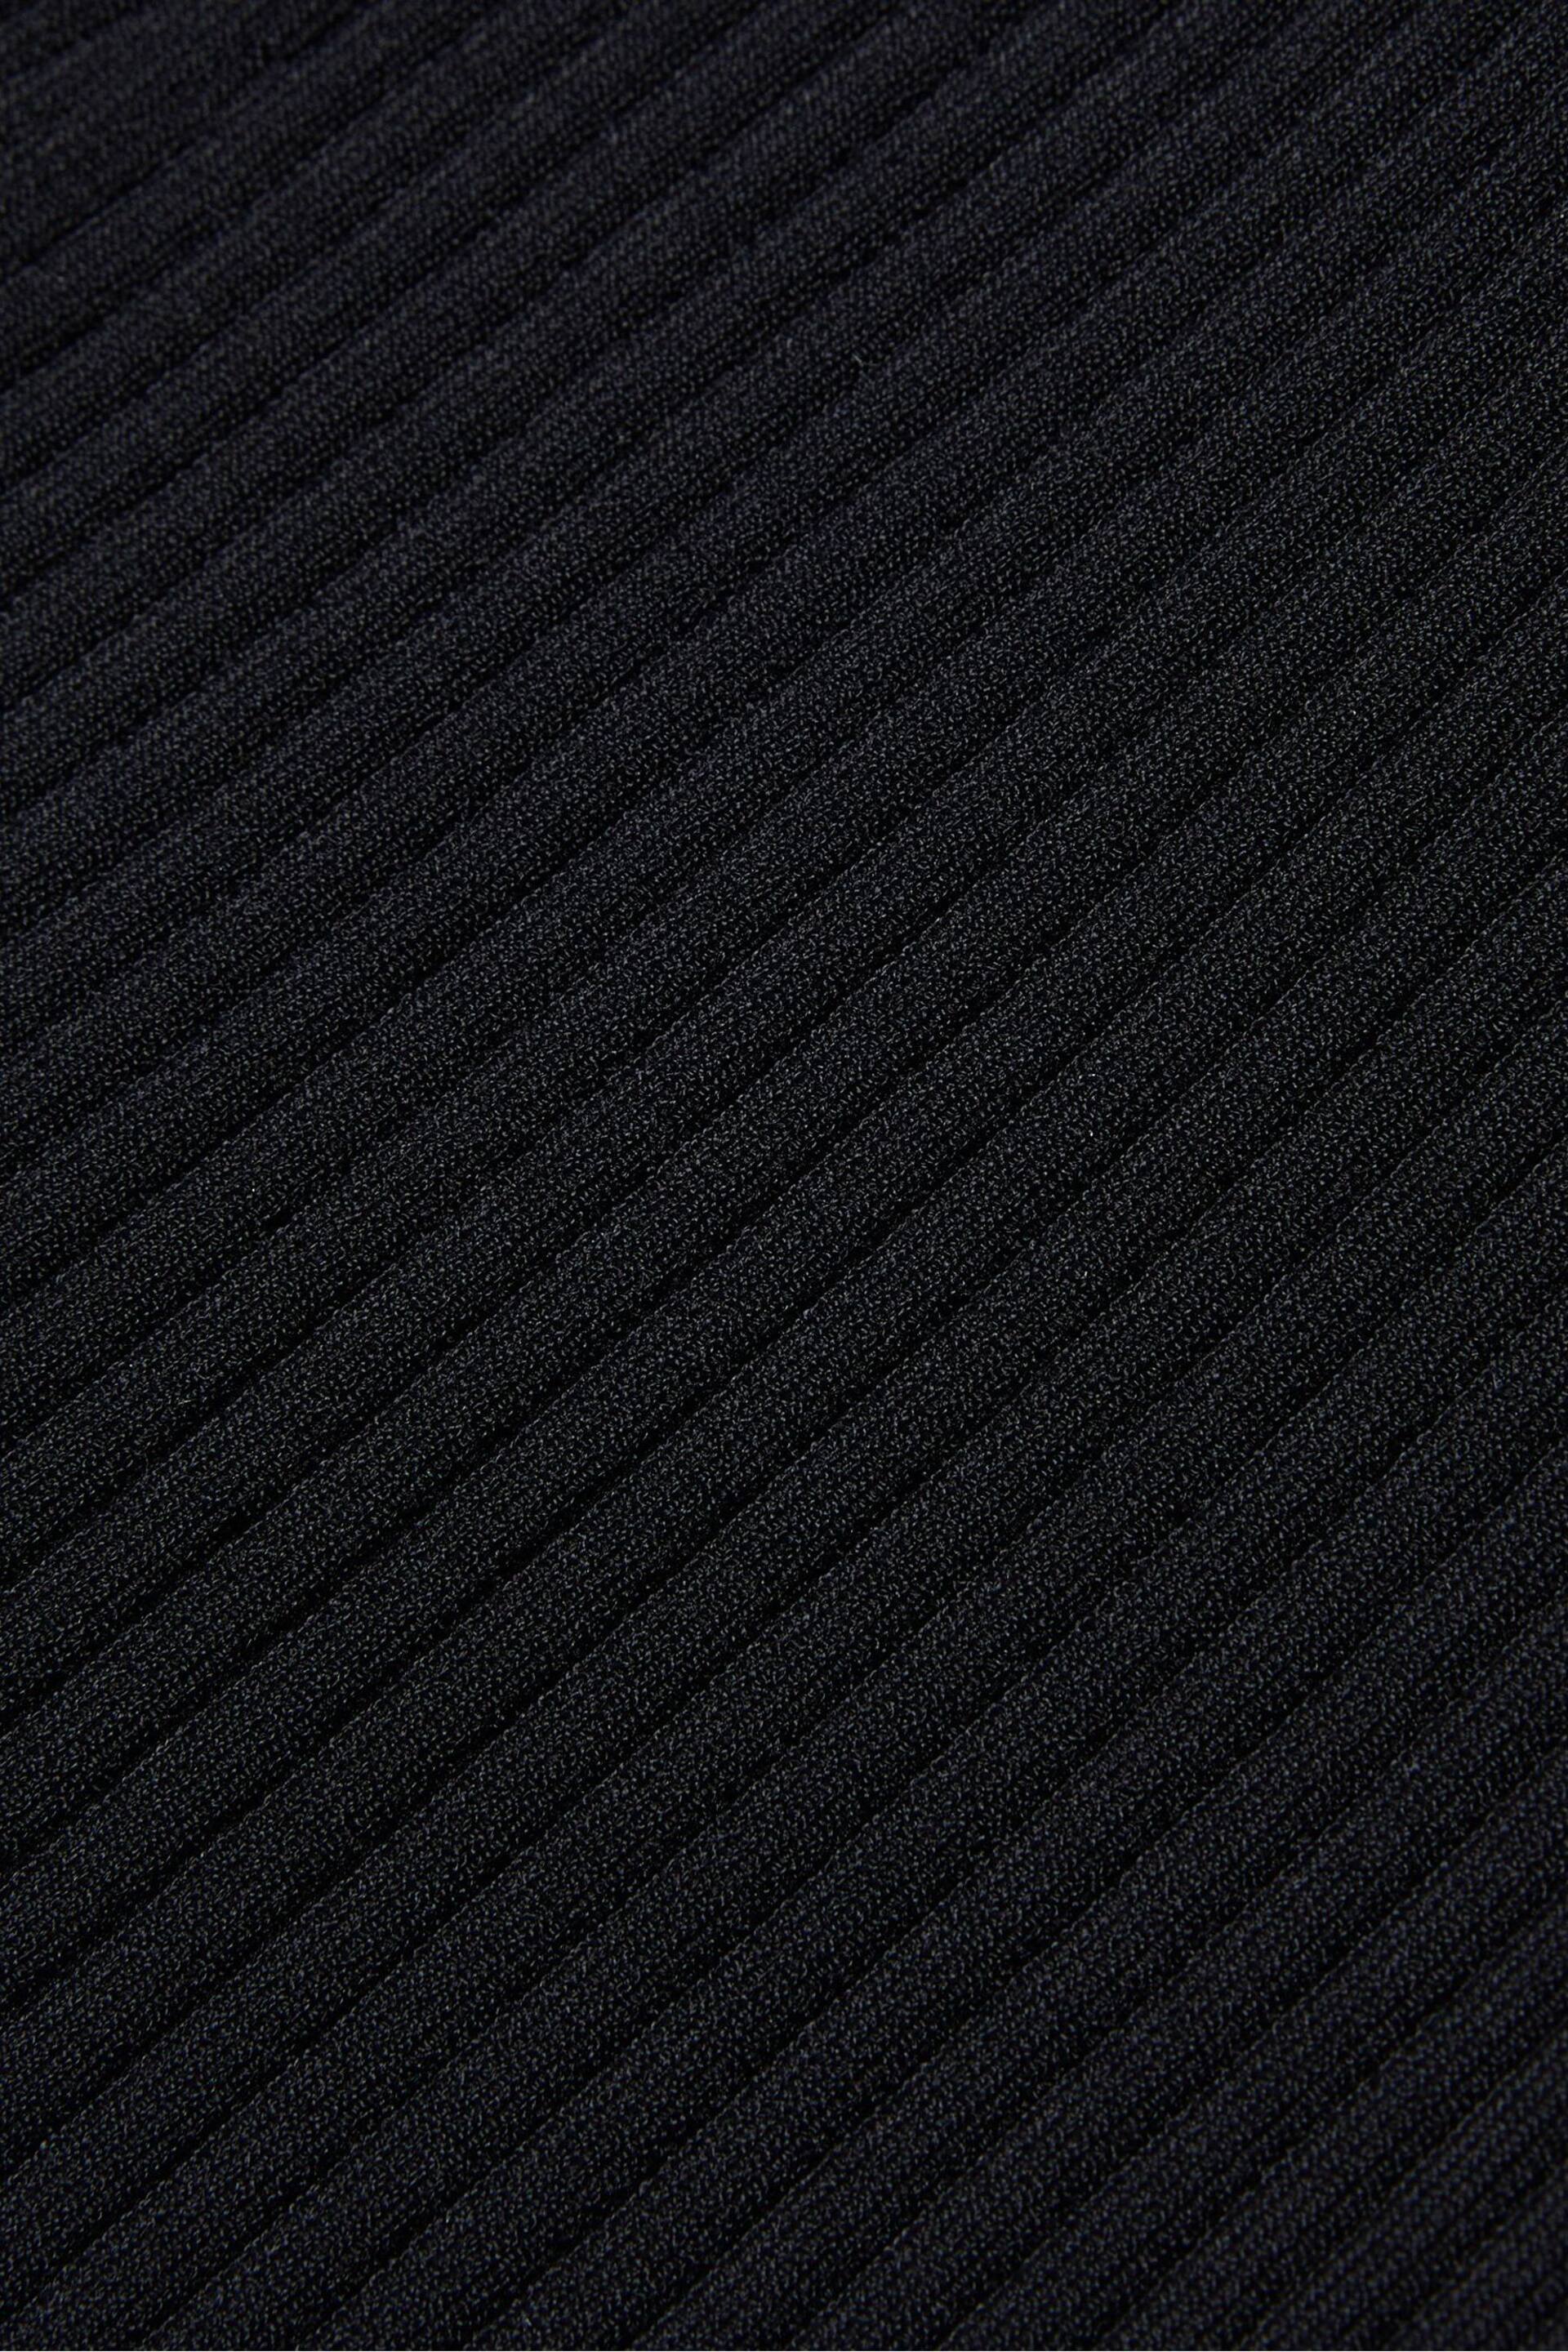 Ted Baker Black Rib Detail Betylou Biker Knit Skirt - Image 4 of 5